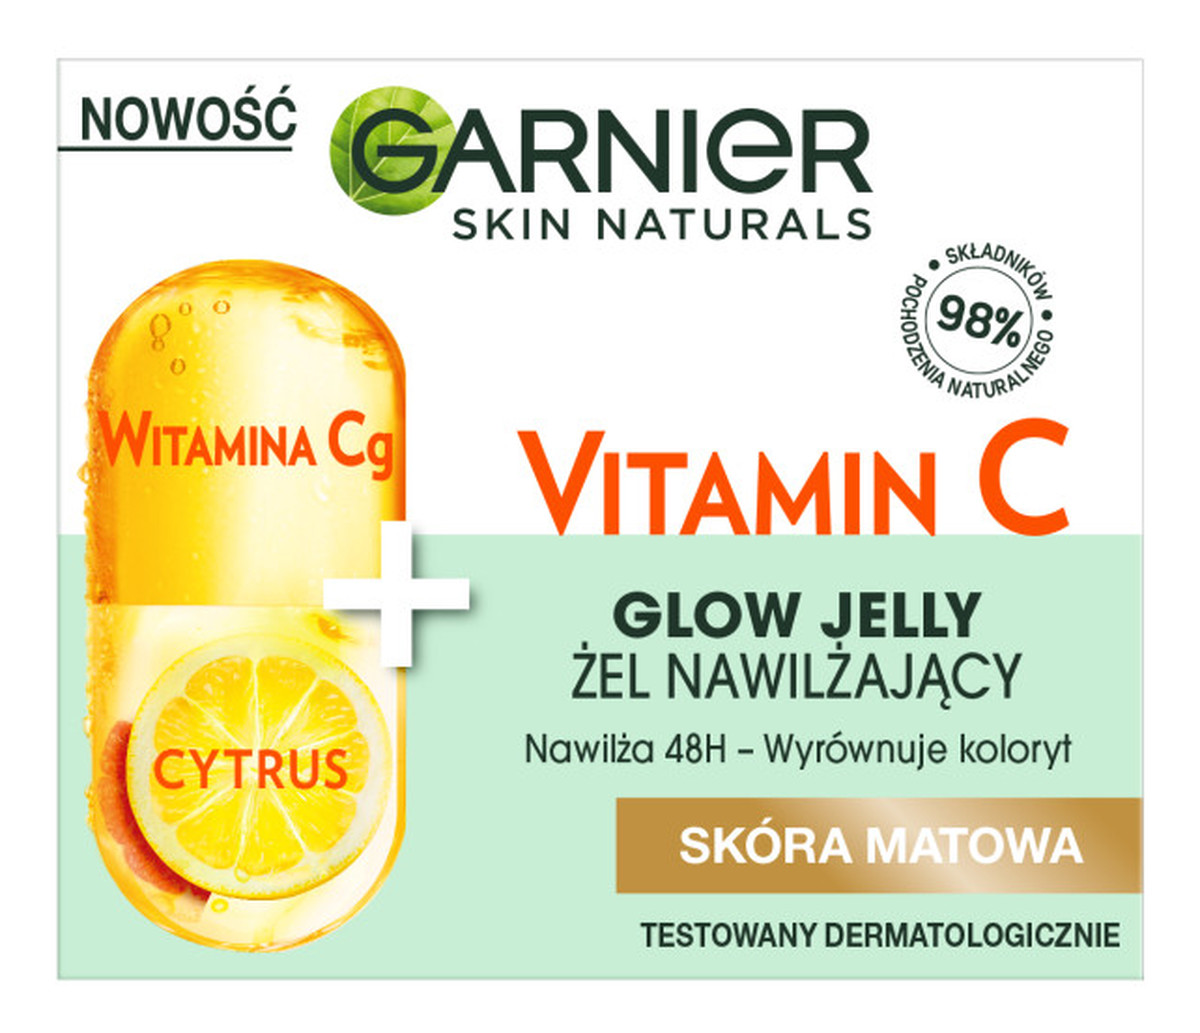 Vitamin C Glow Jelly żel nawilżający do twarzy Witamina Cg + Cytrus